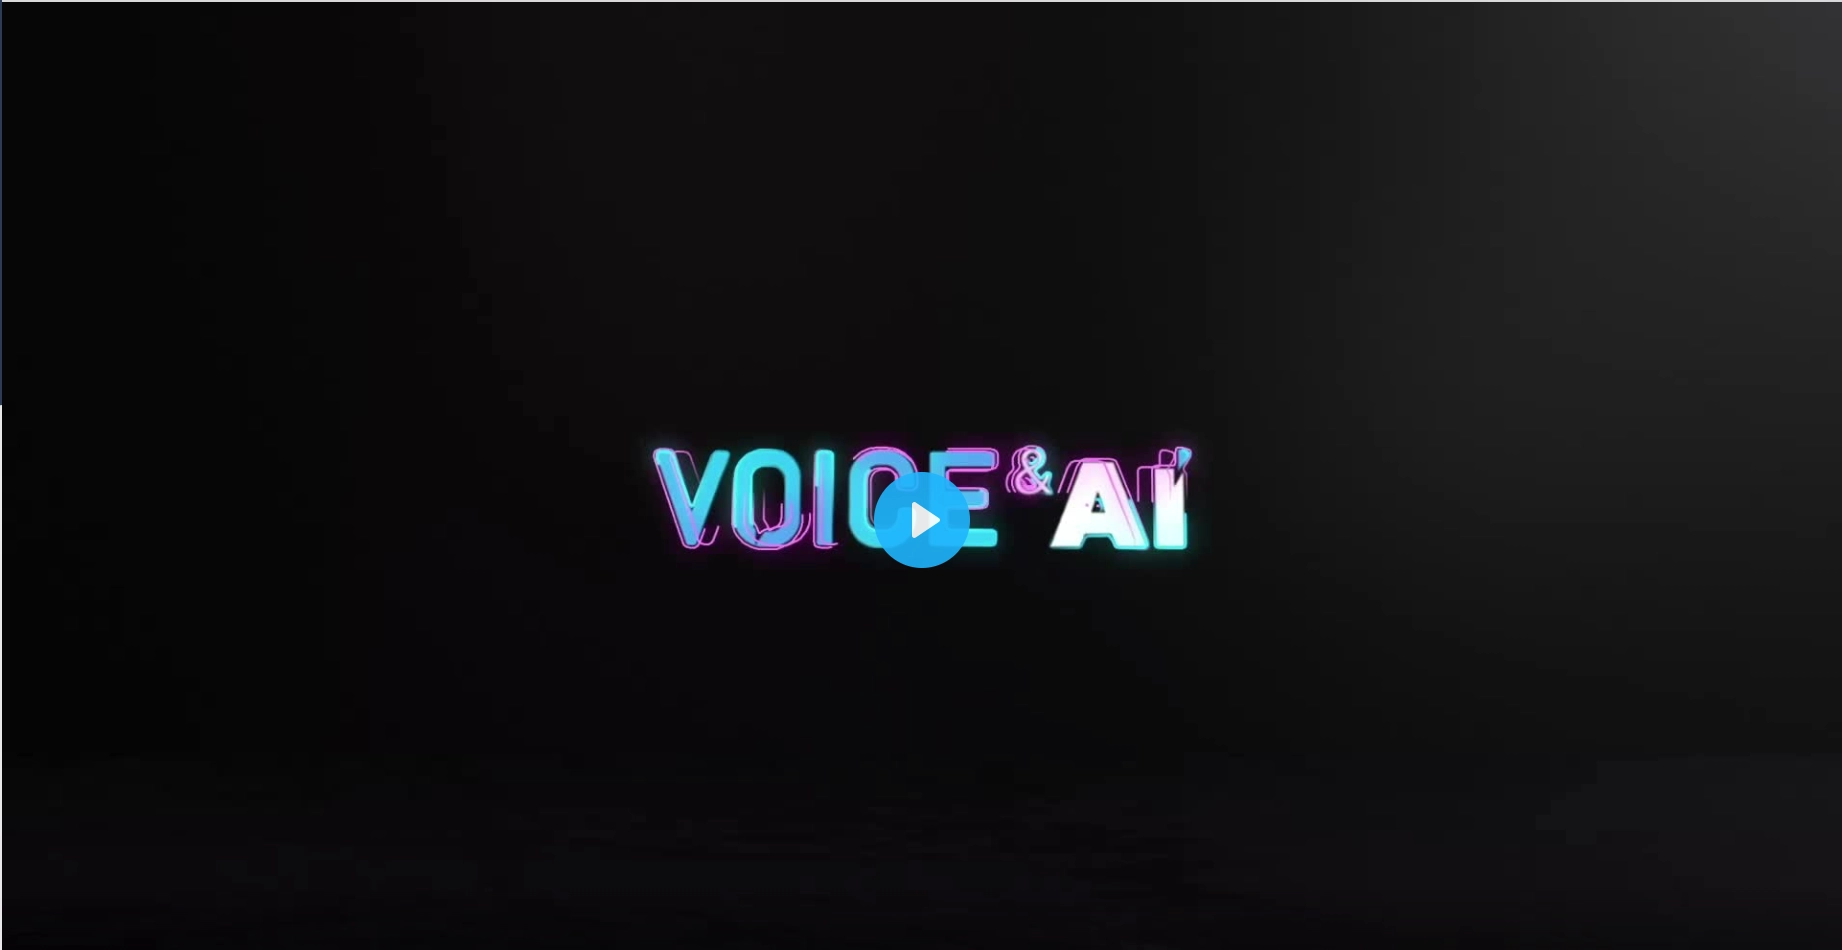 Voice&AI